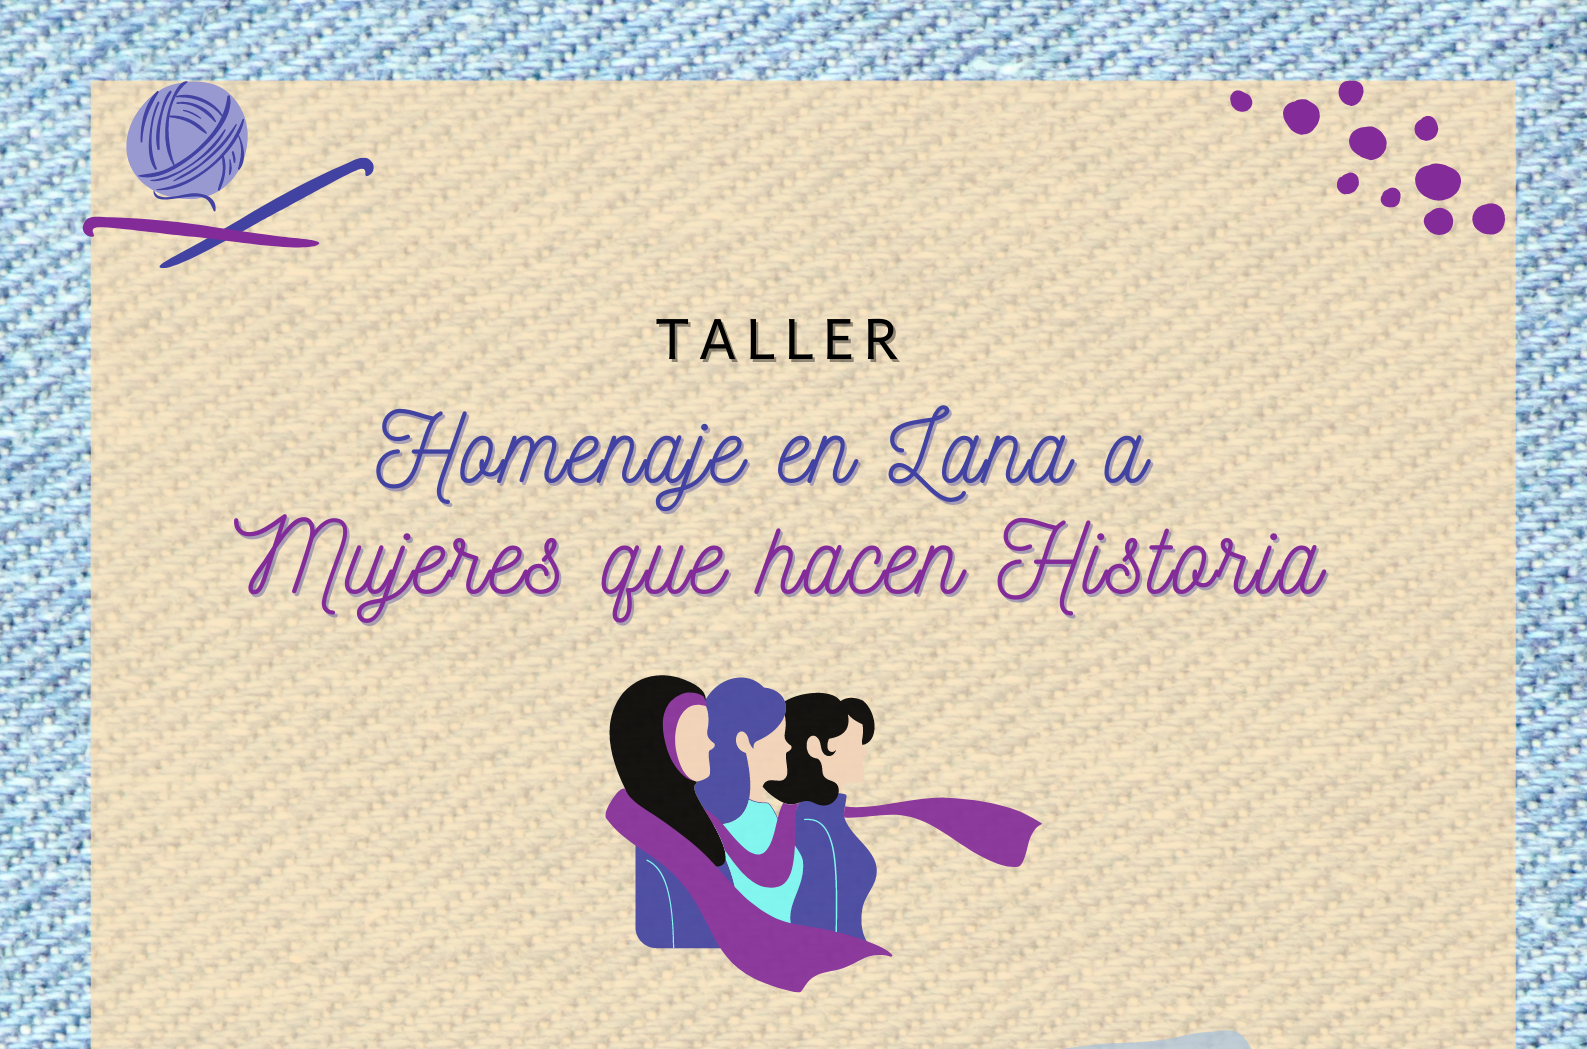 "Taller Homenaje en Lana a Mujeres que hacen Historia" en Arucas. Gran Canaria